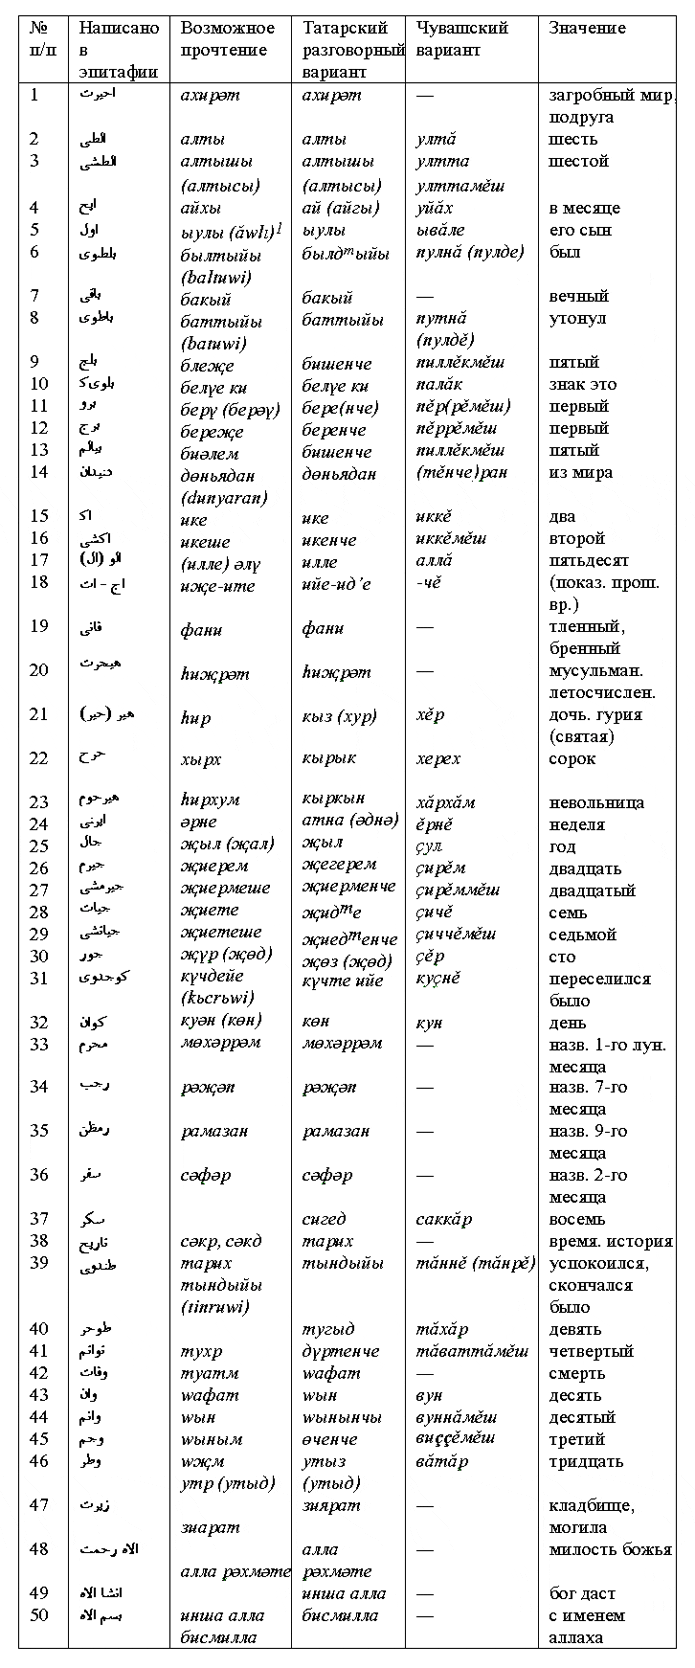 Сравнителна таблица на тюркския лексикален състав 